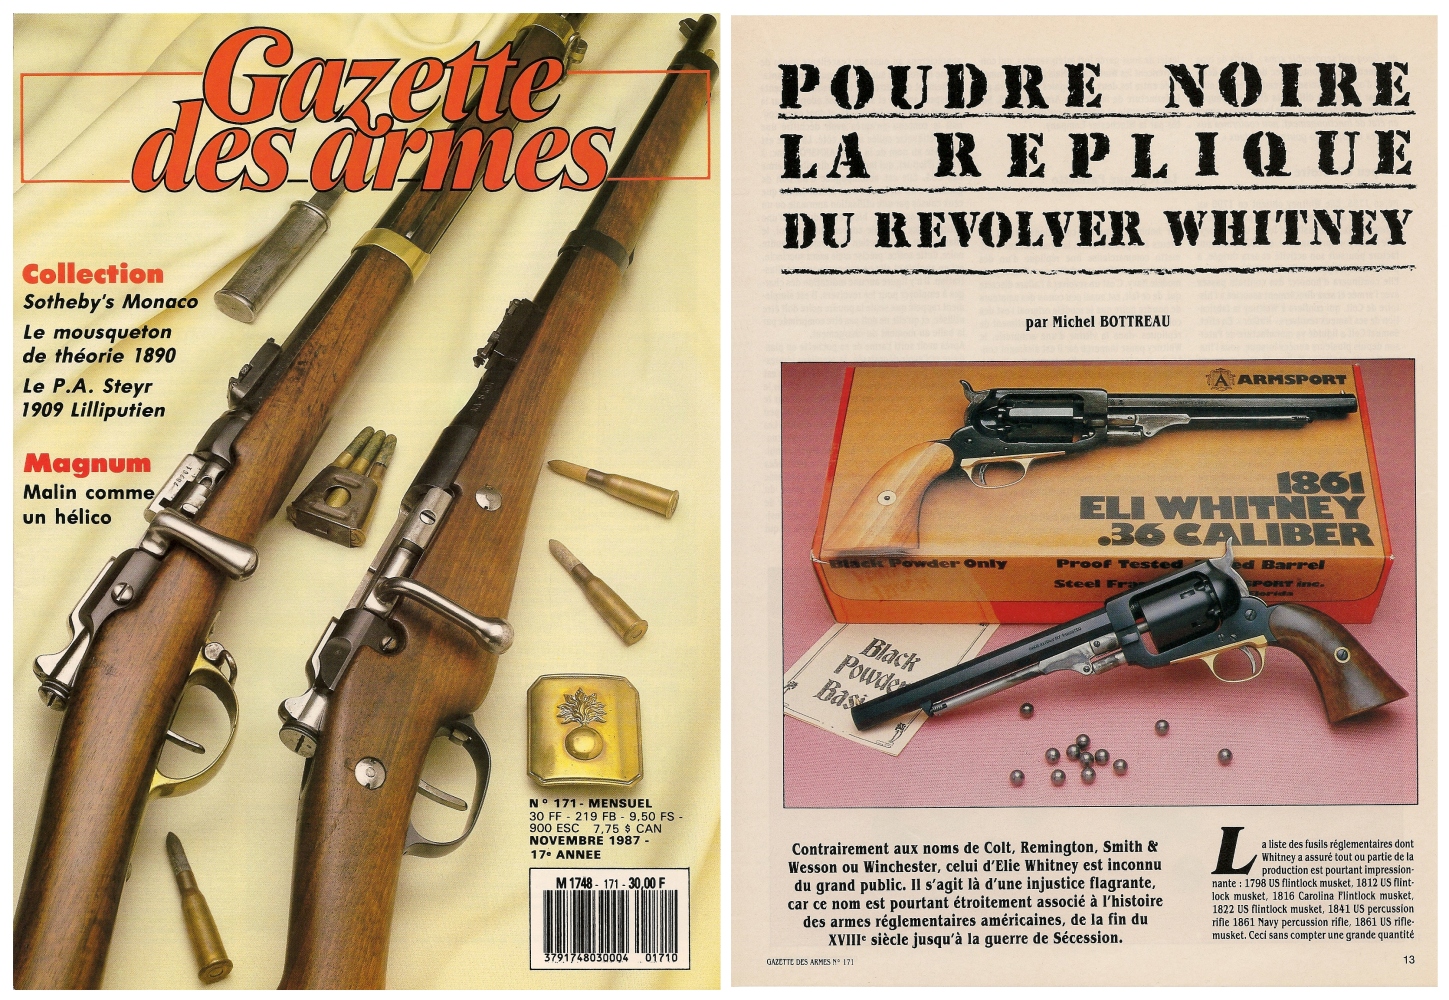 Le banc d’essai de la réplique du revolver Whitney Navy a été publié sur 6 pages dans le magazine Gazette des Armes n°171 (novembre 1987).